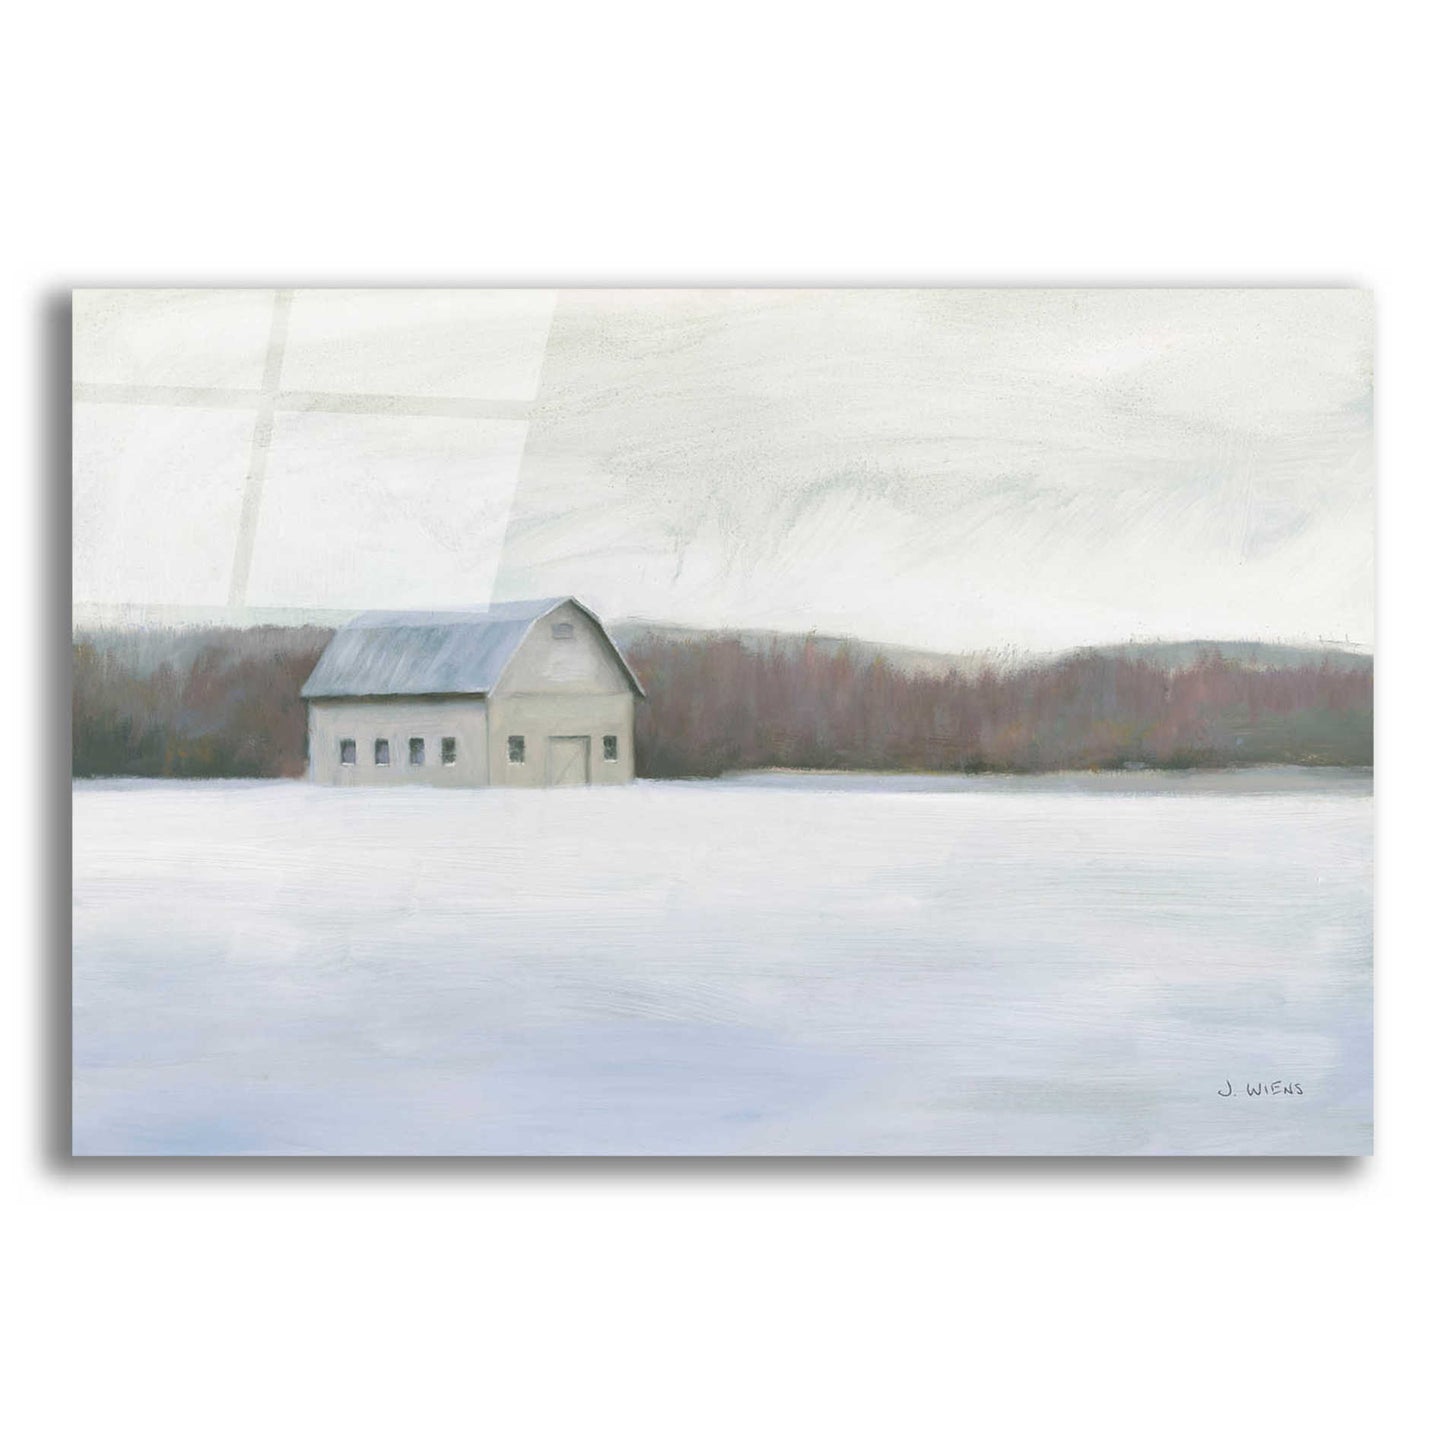 Epic Art 'Winter Barn' by James Wiens, Acrylic Glass Wall Art,18x12x1.1x0,26x18x1.1x0,40x26x1.74x0,60x40x1.74x0